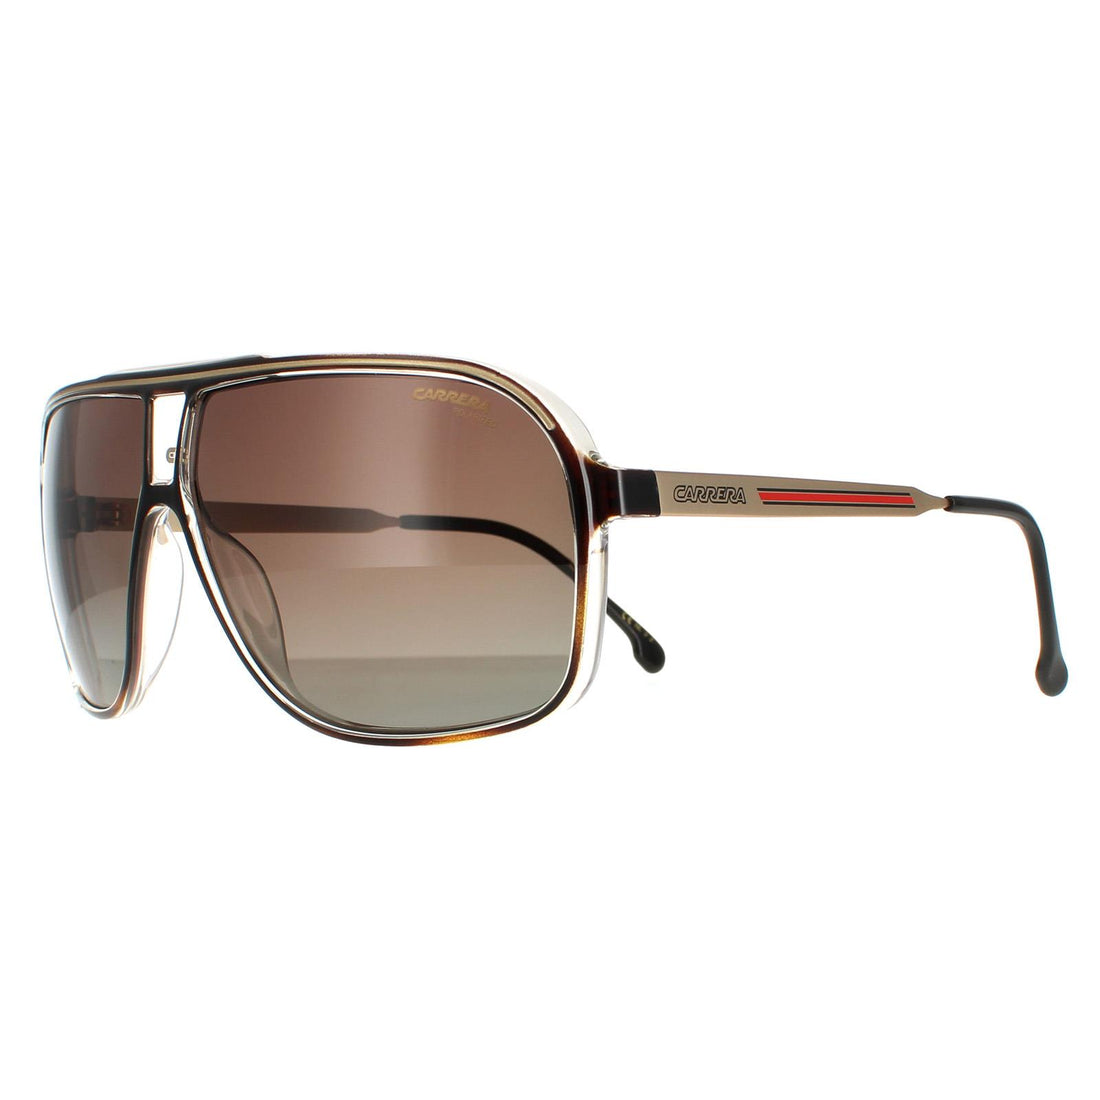 Carrera Sunglasses Grand Prix 3 086 LA Havana Brown Gradient Polarized